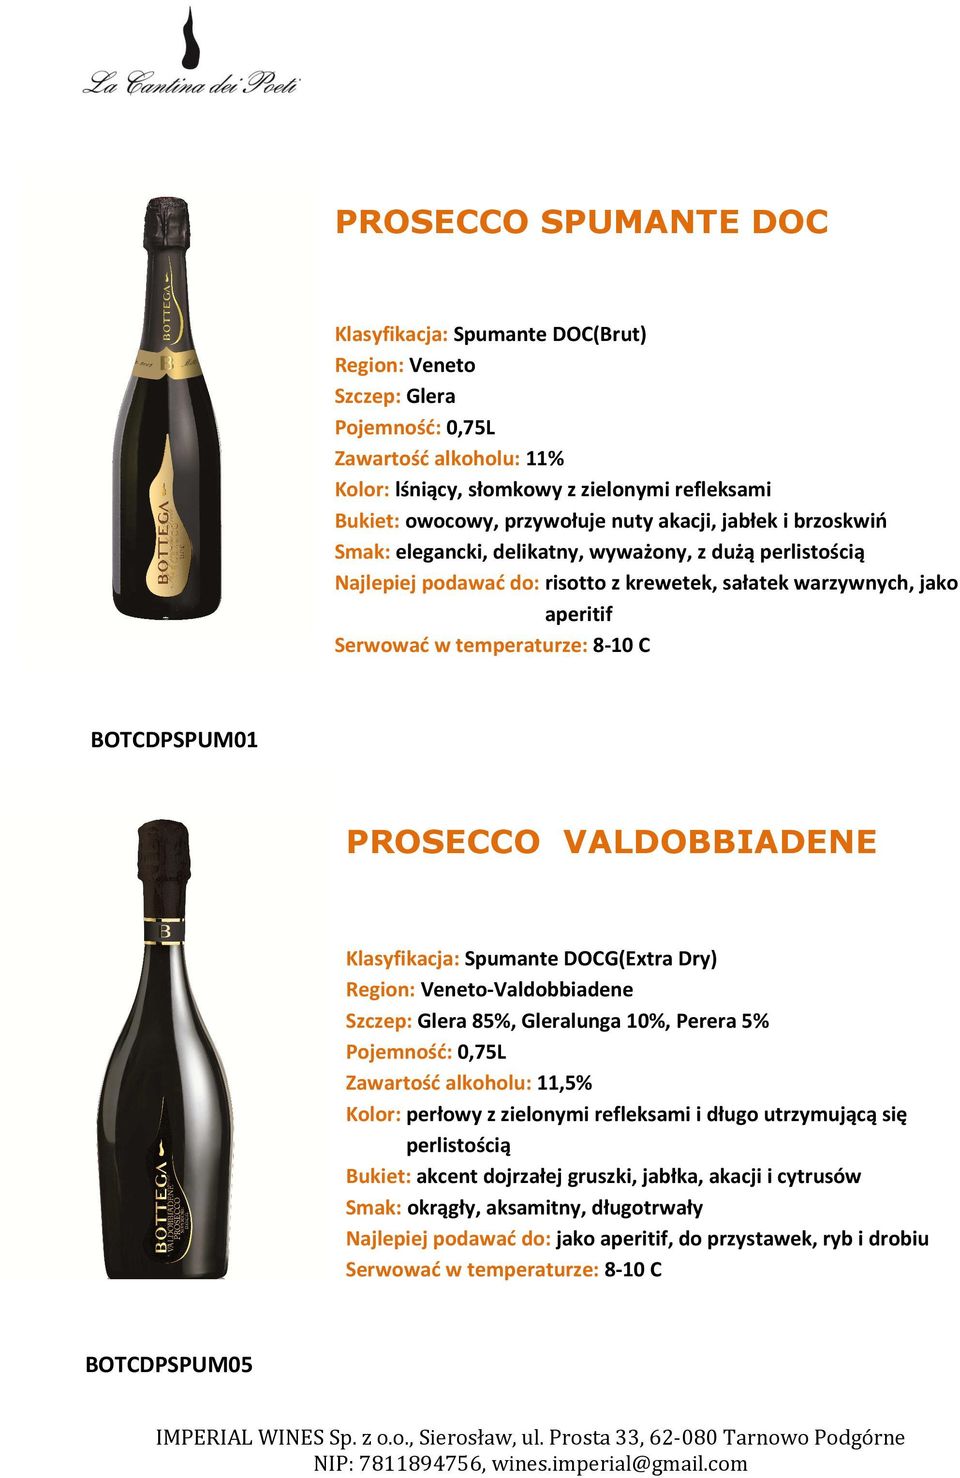 PROSECCO VALDOBBIADENE Klasyfikacja: Spumante DOCG(Extra Dry) Region: Veneto-Valdobbiadene Szczep: Glera 85%, Gleralunga 10%, Perera 5% Zawartość alkoholu: 11,5% Kolor: perłowy z zielonymi refleksami